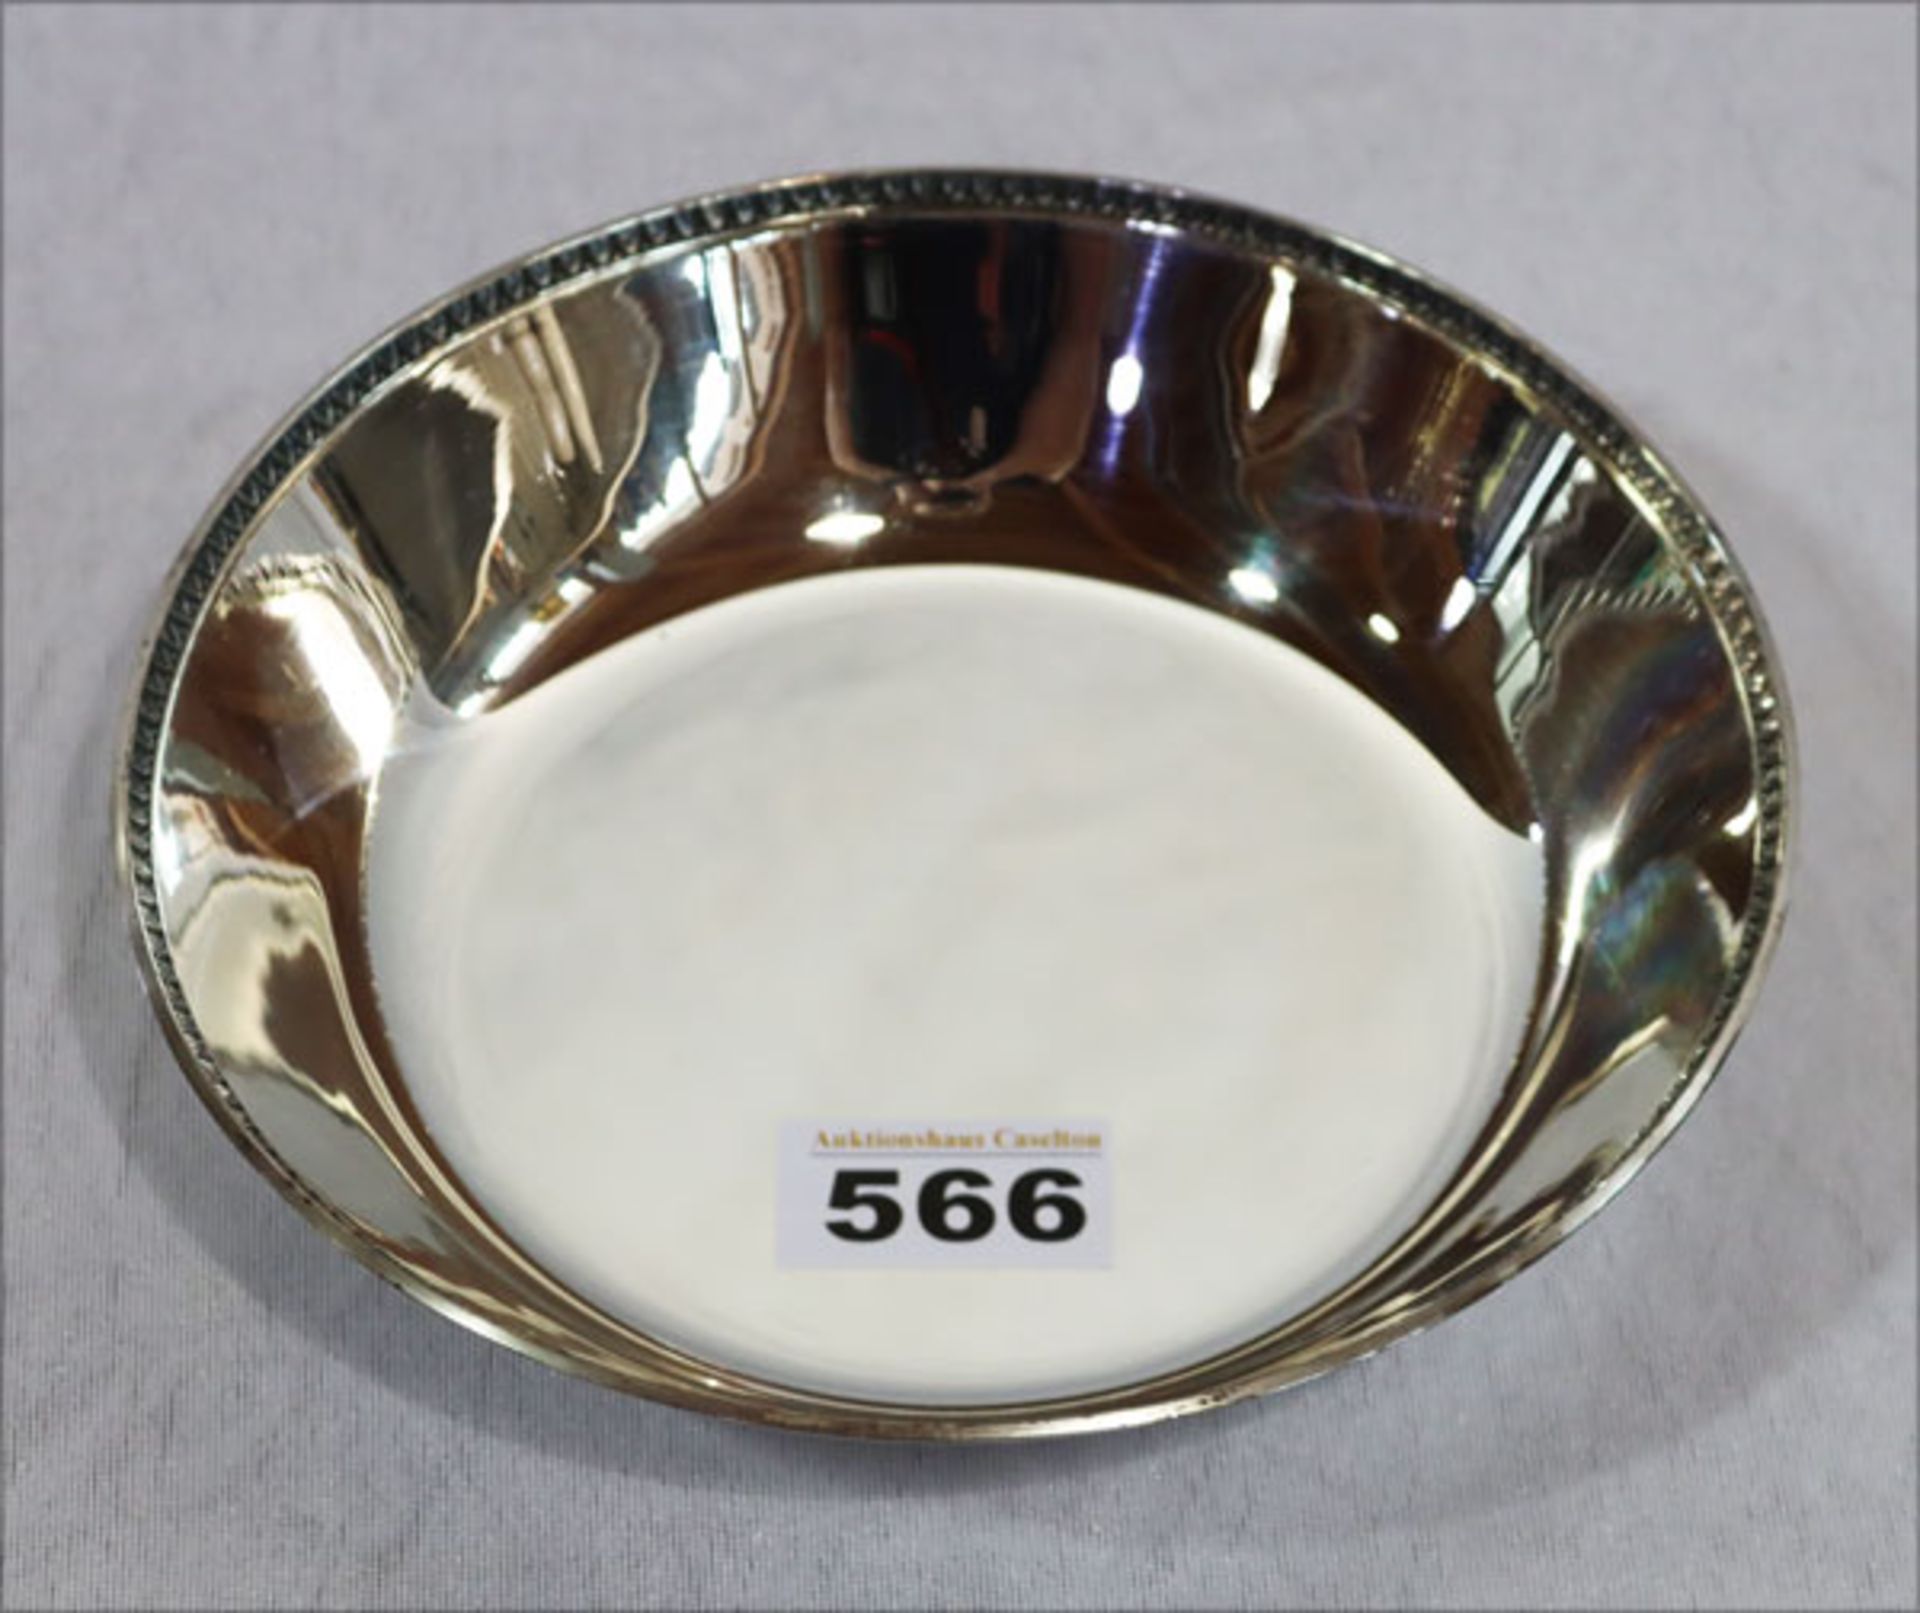 Runde Silberschale mit Reliefrand, 925 Silber, 349 gr., H 4,5 cm, D 18,5 cm, leichte